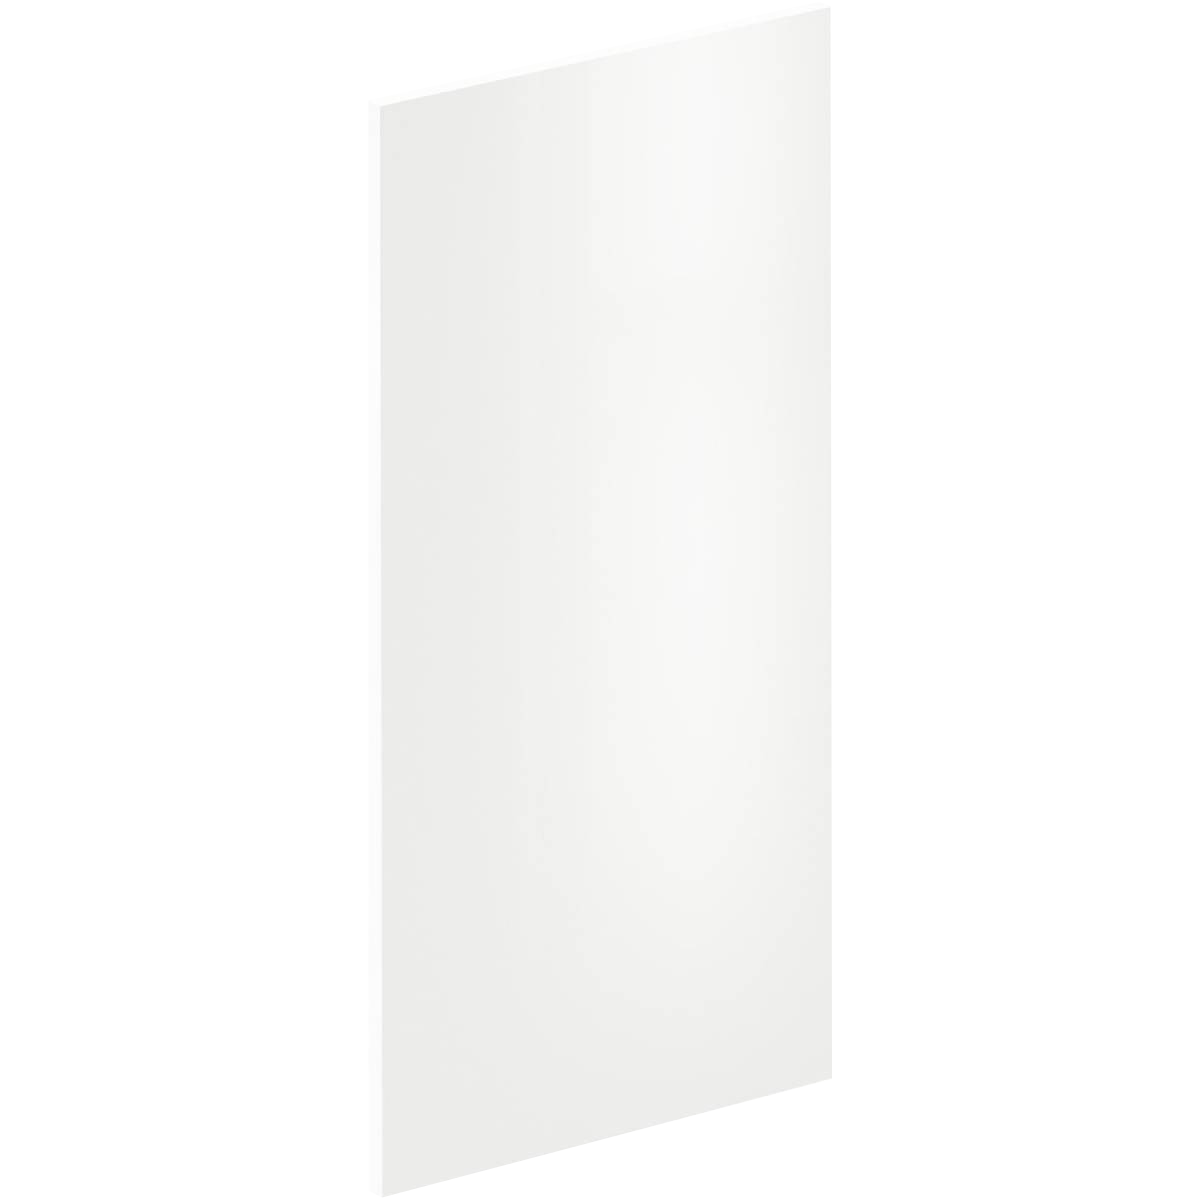 Lote de 2 puertas mueble de cocina sevilla blanco brillo h 76.8x l 36.7 cm